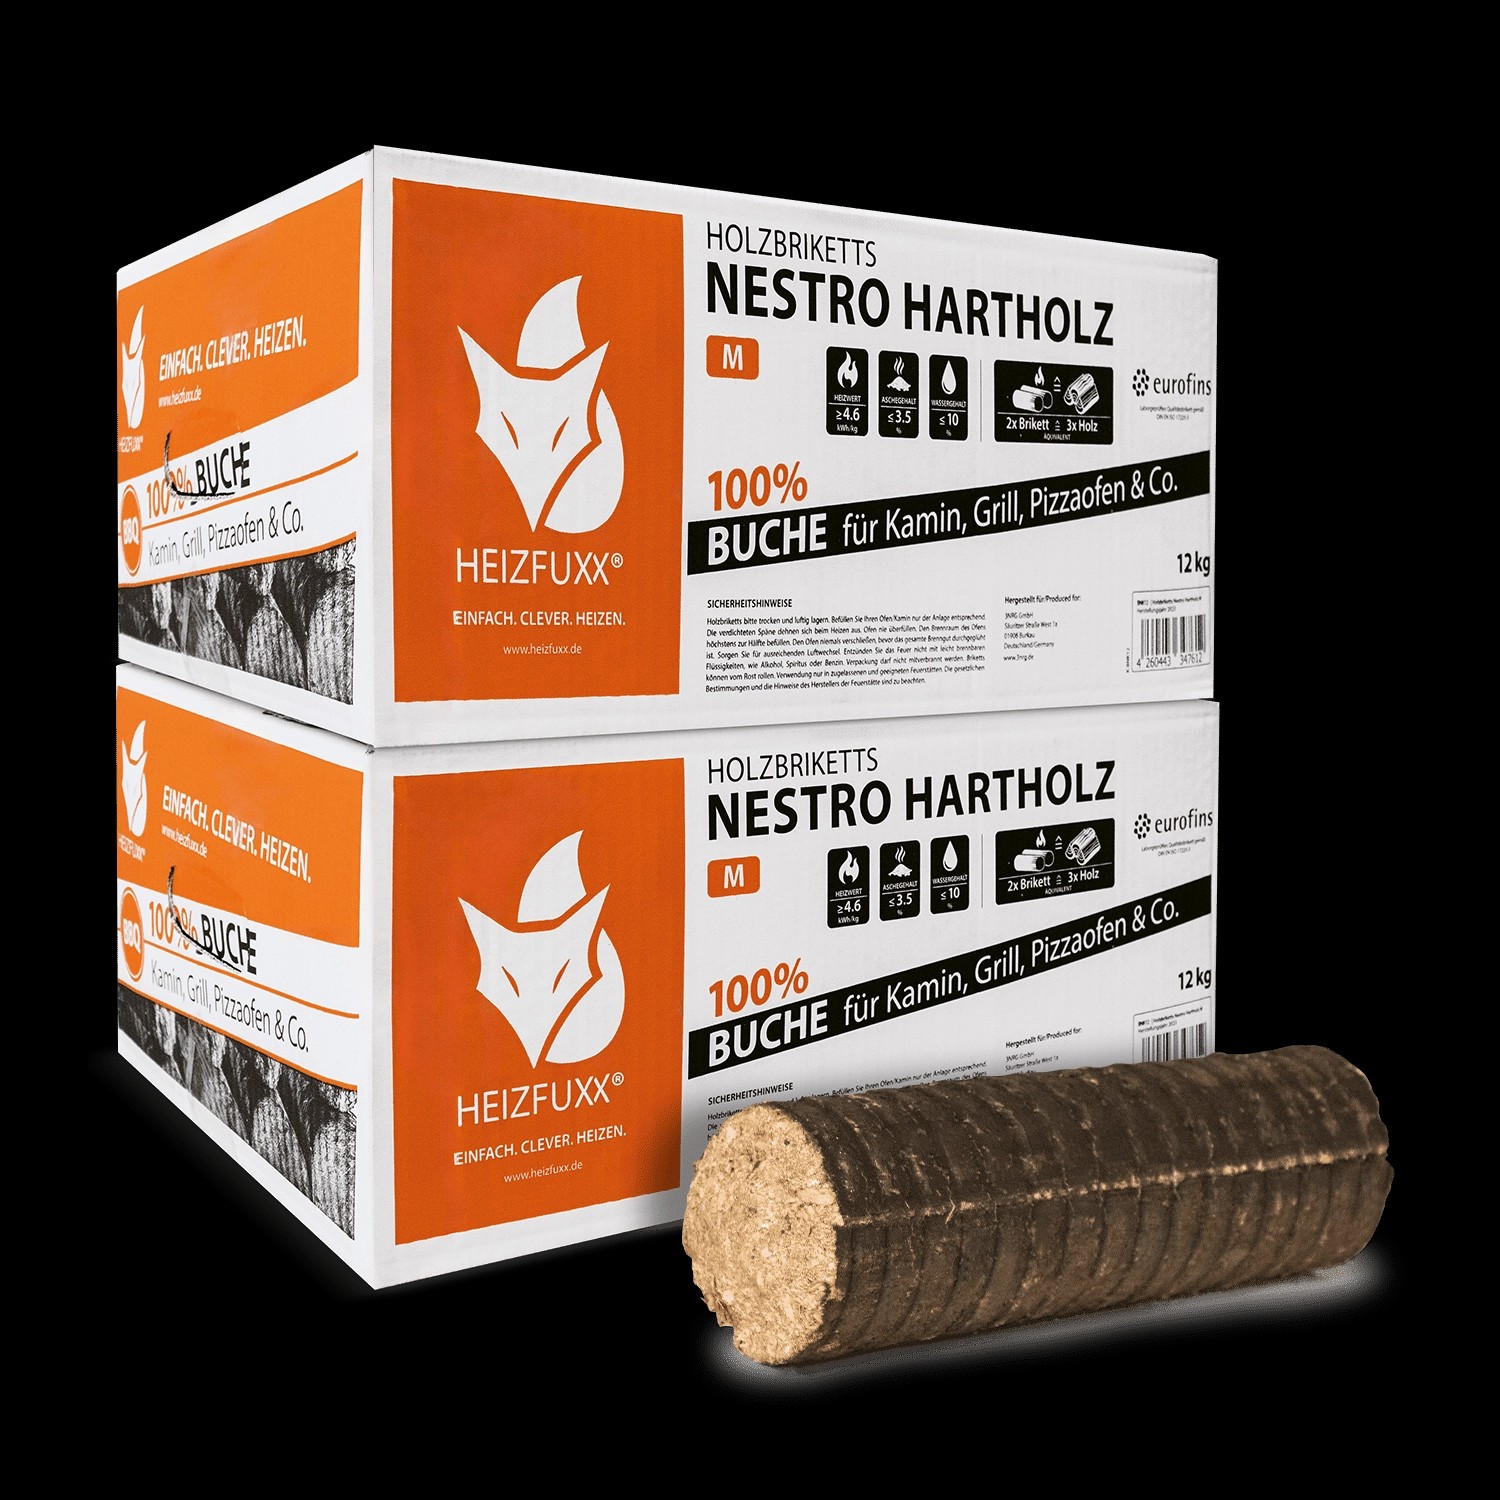 Heizfuxx Nestro Hartholz m 12kg x 2 Karton 24kg günstig online kaufen